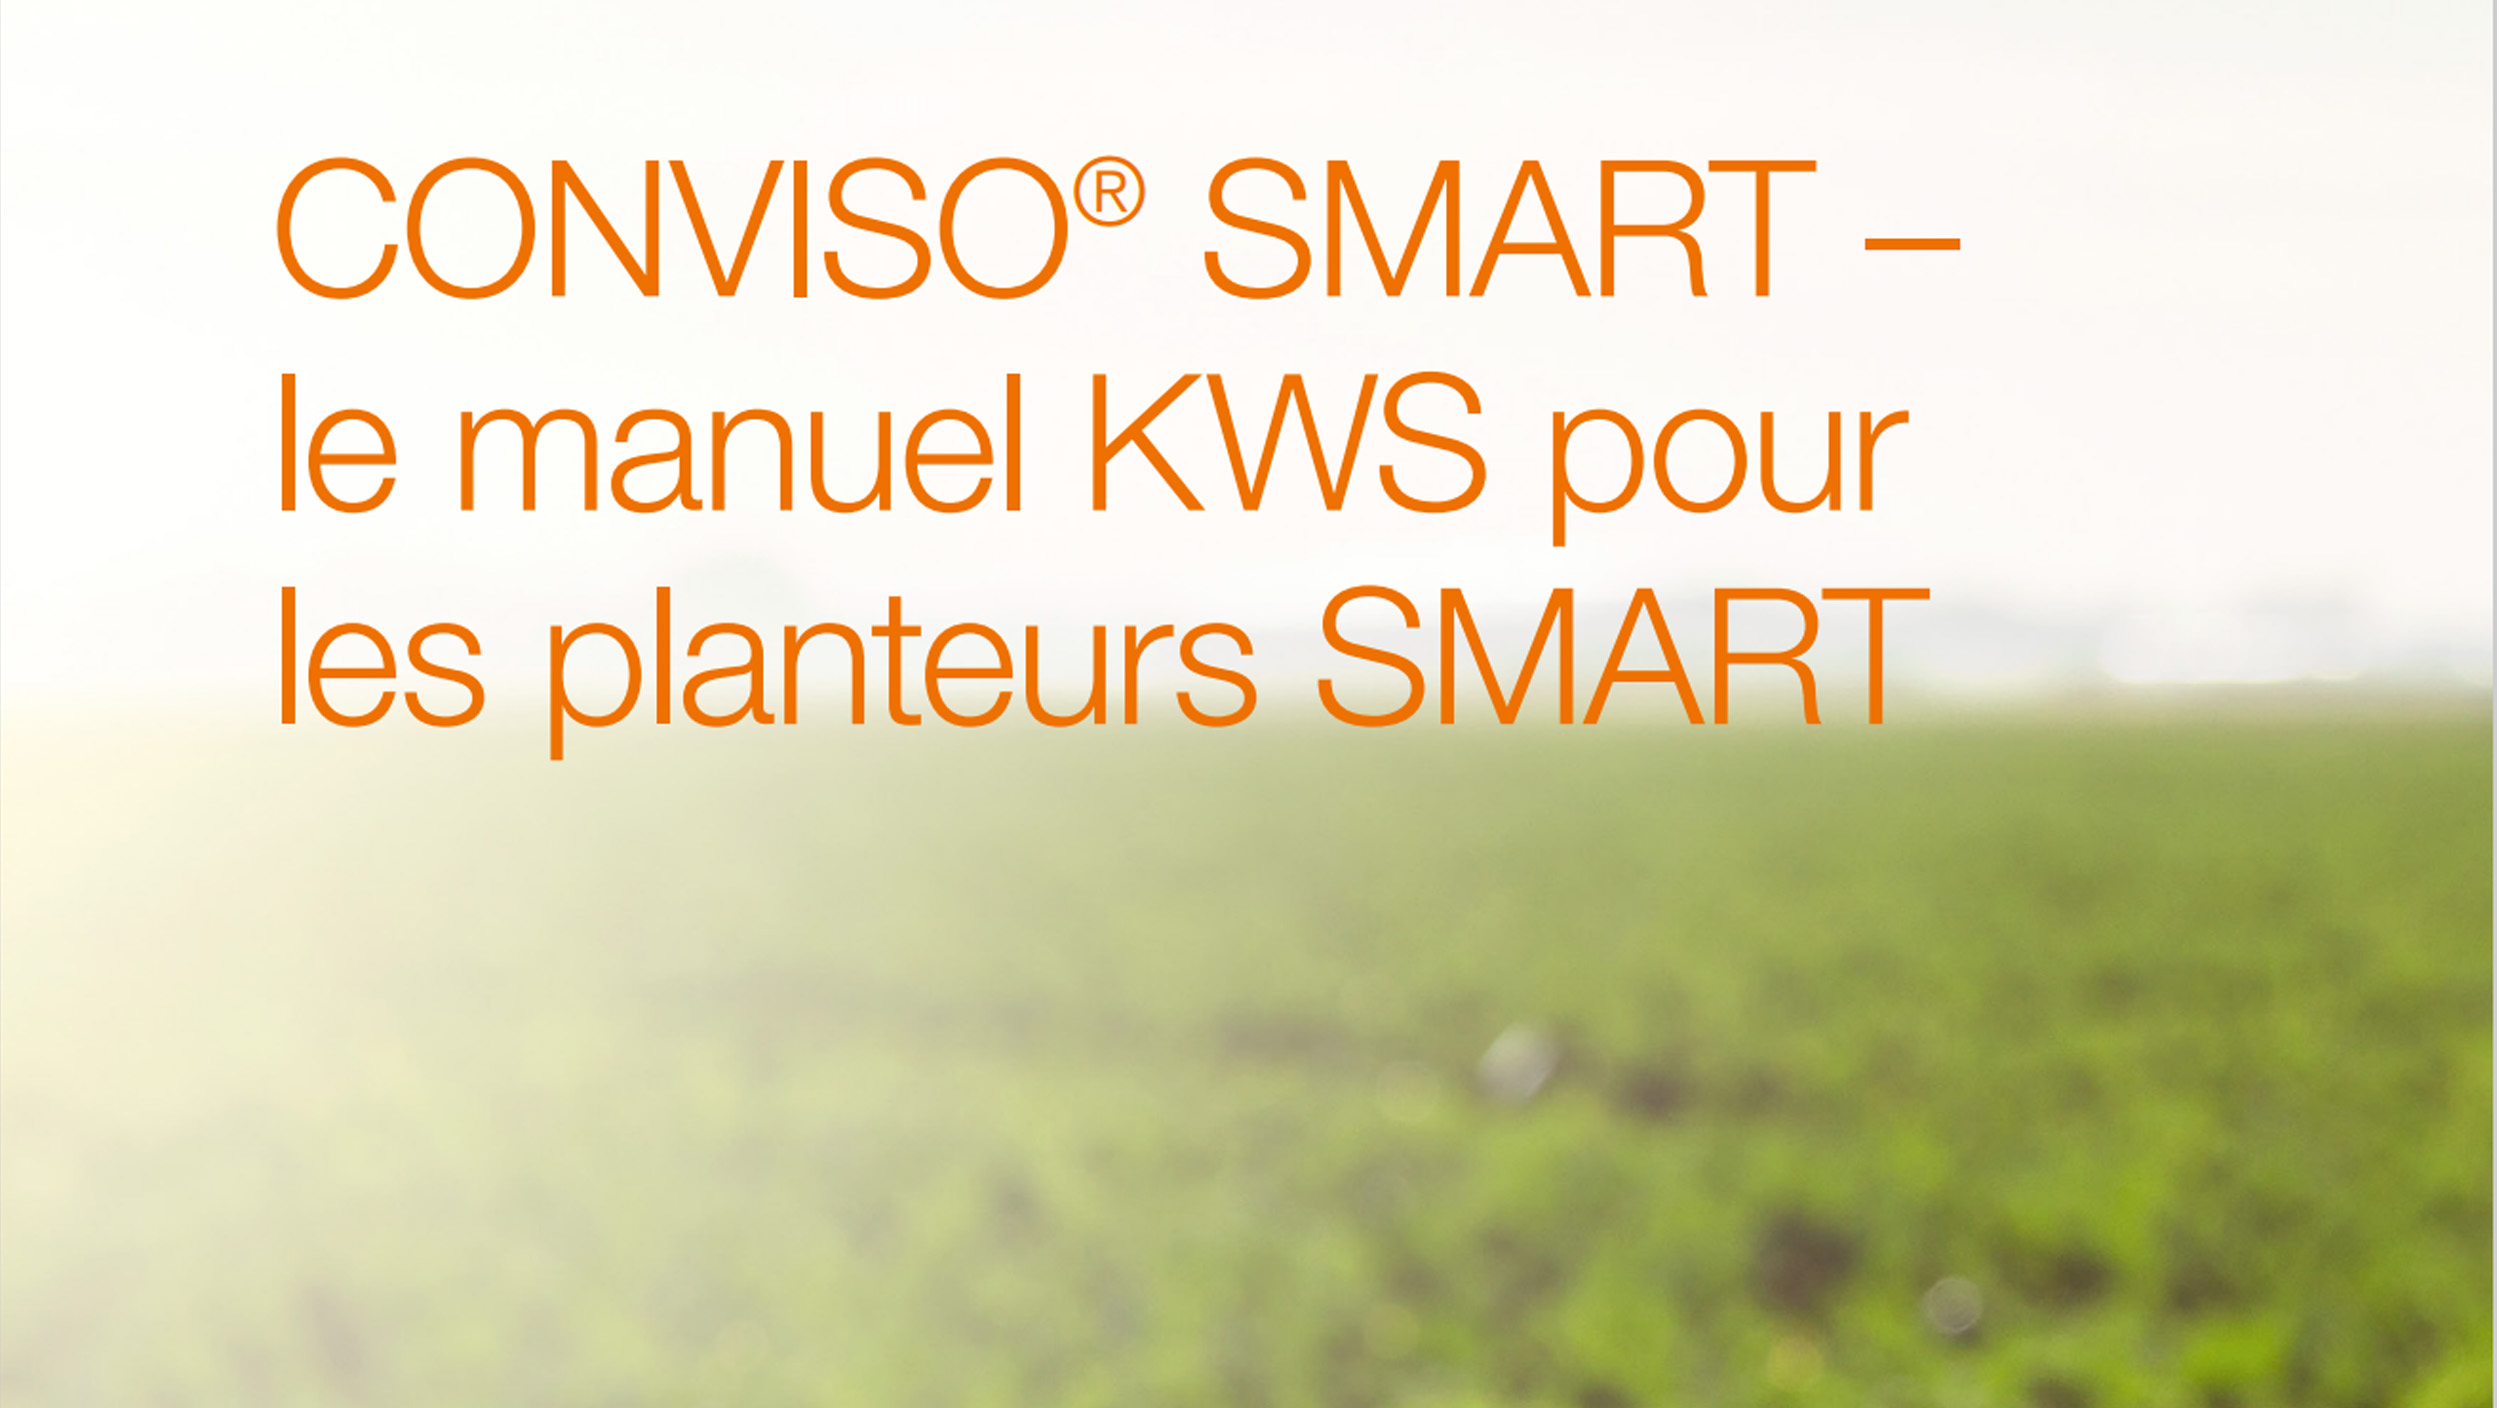 CONVISO_SMART_le-manuel-KWS-pour-les-planteurs-SMART.jpg